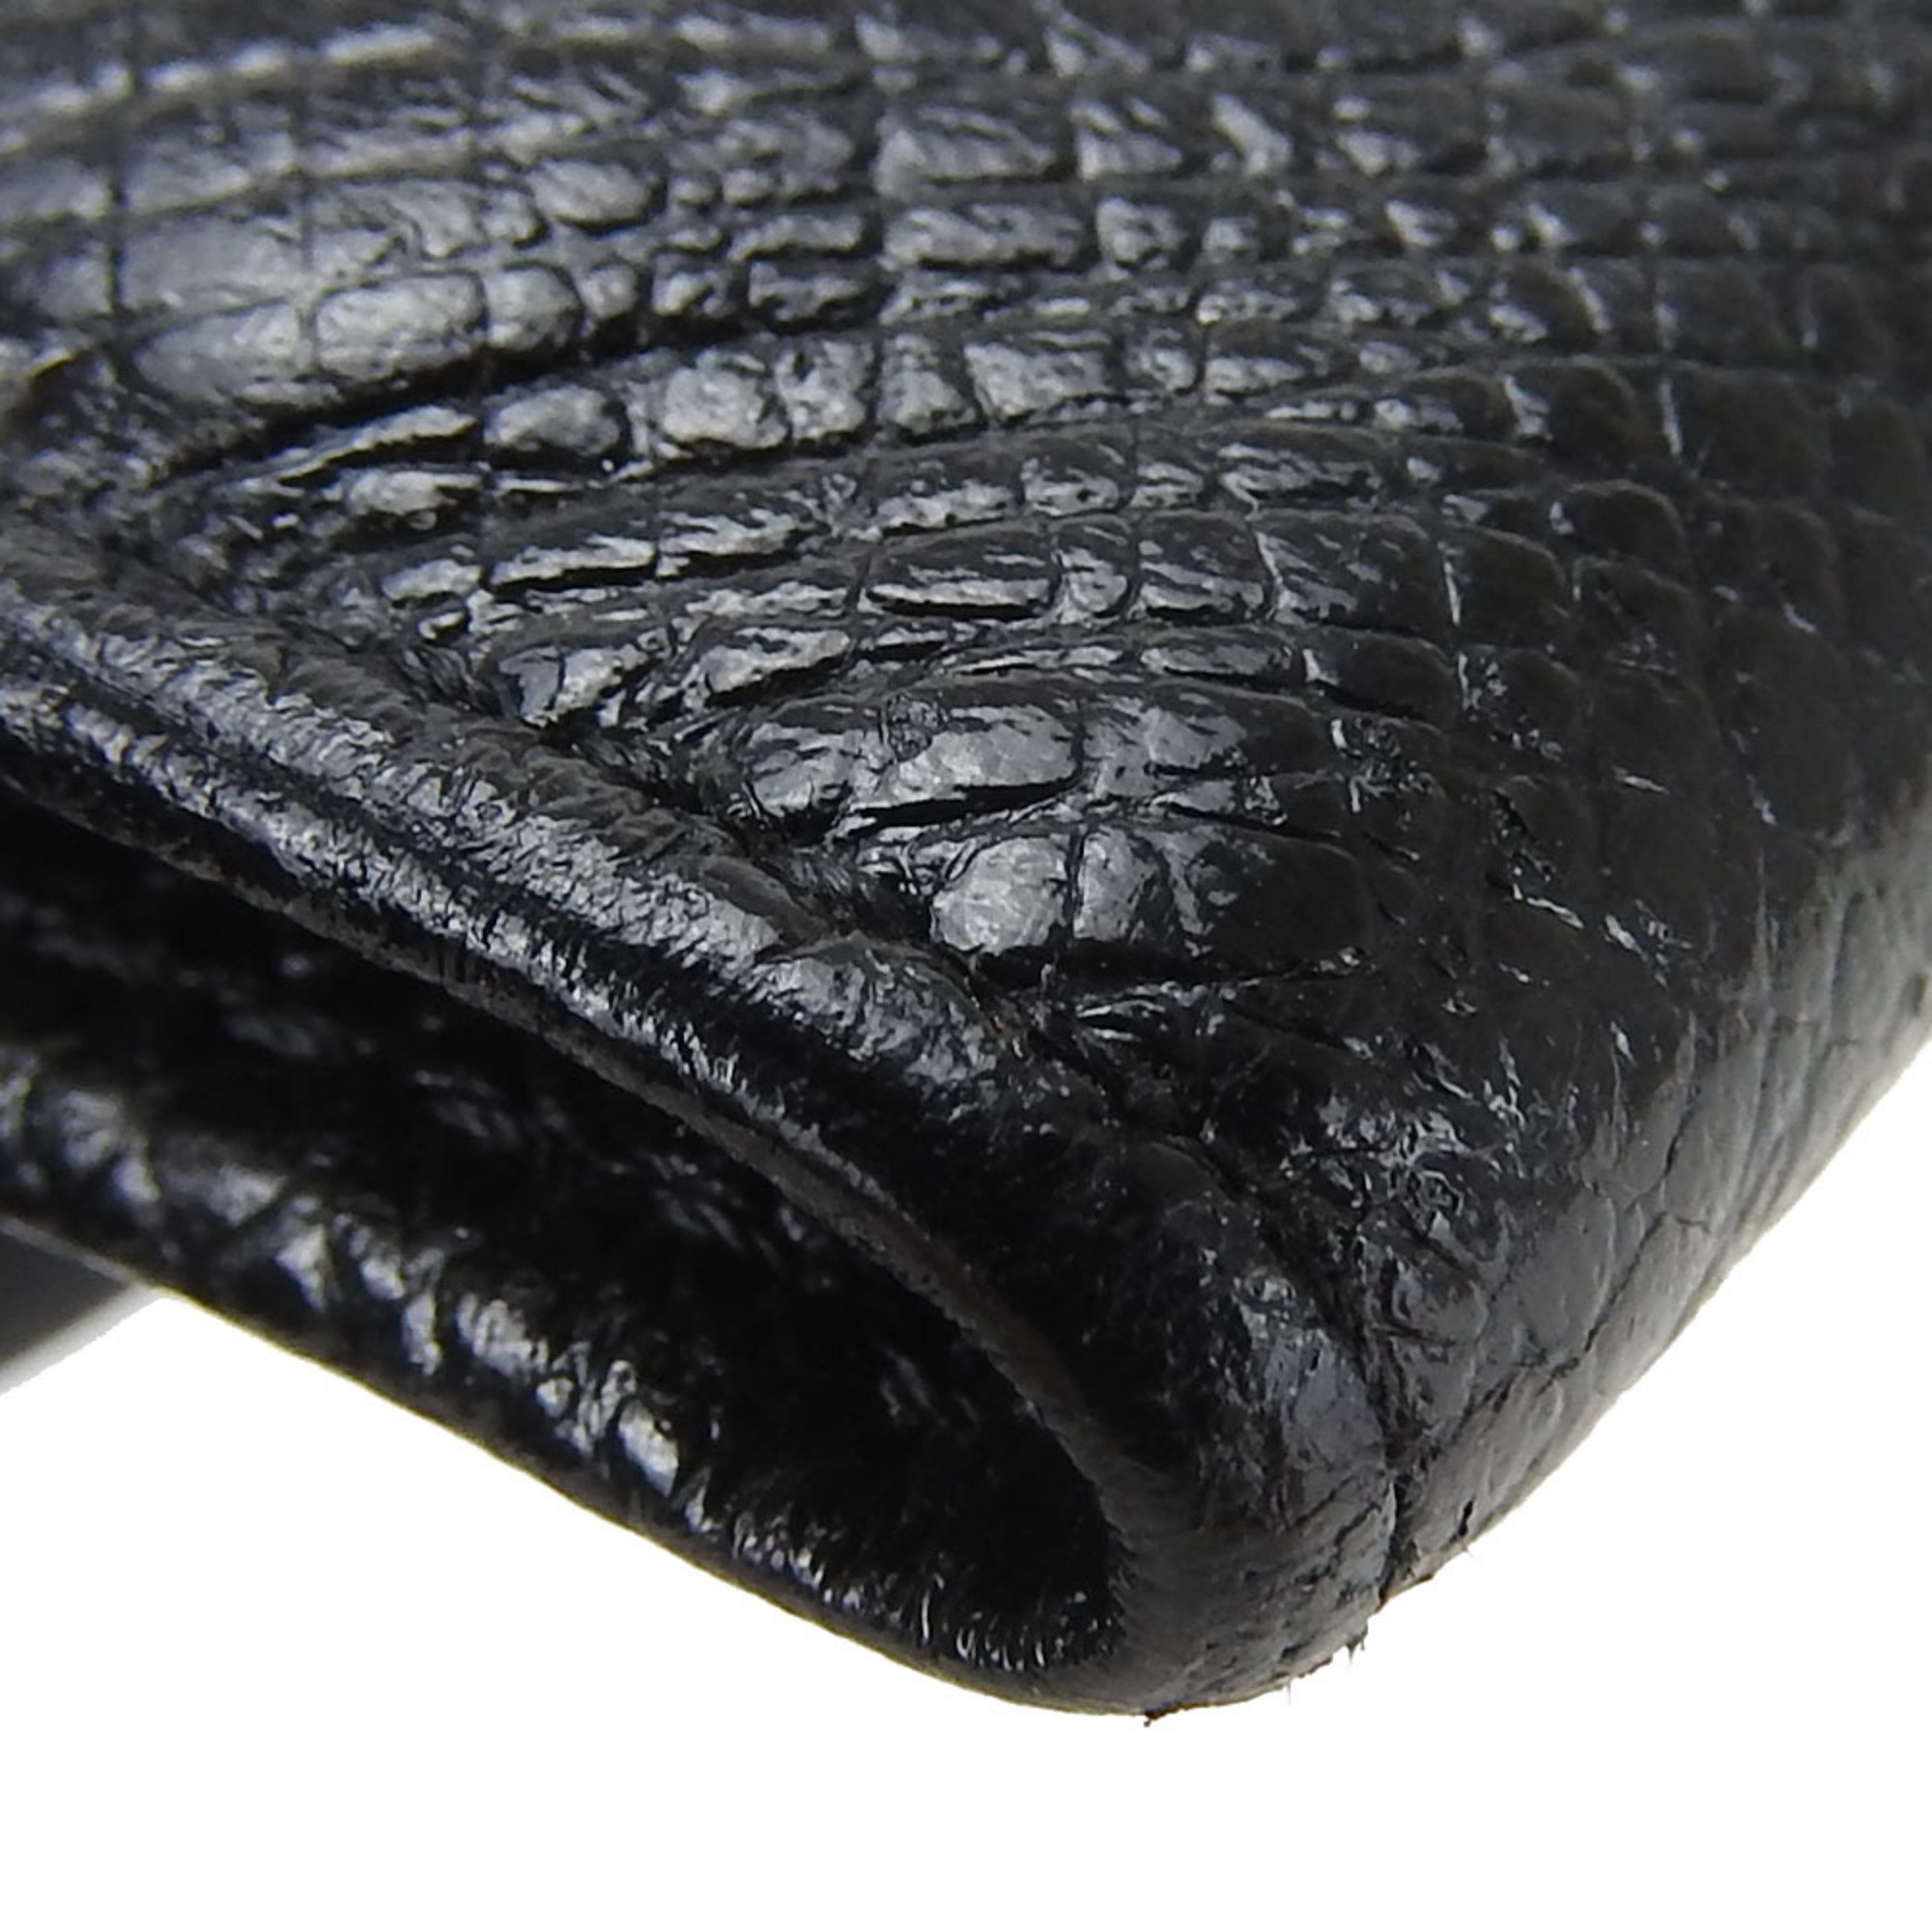 Louis Vuitton Key Case Multicle 6 M30500 Taiga Ardoise Black 6-ring Accessory Women's Men's LOUIS VUITTON